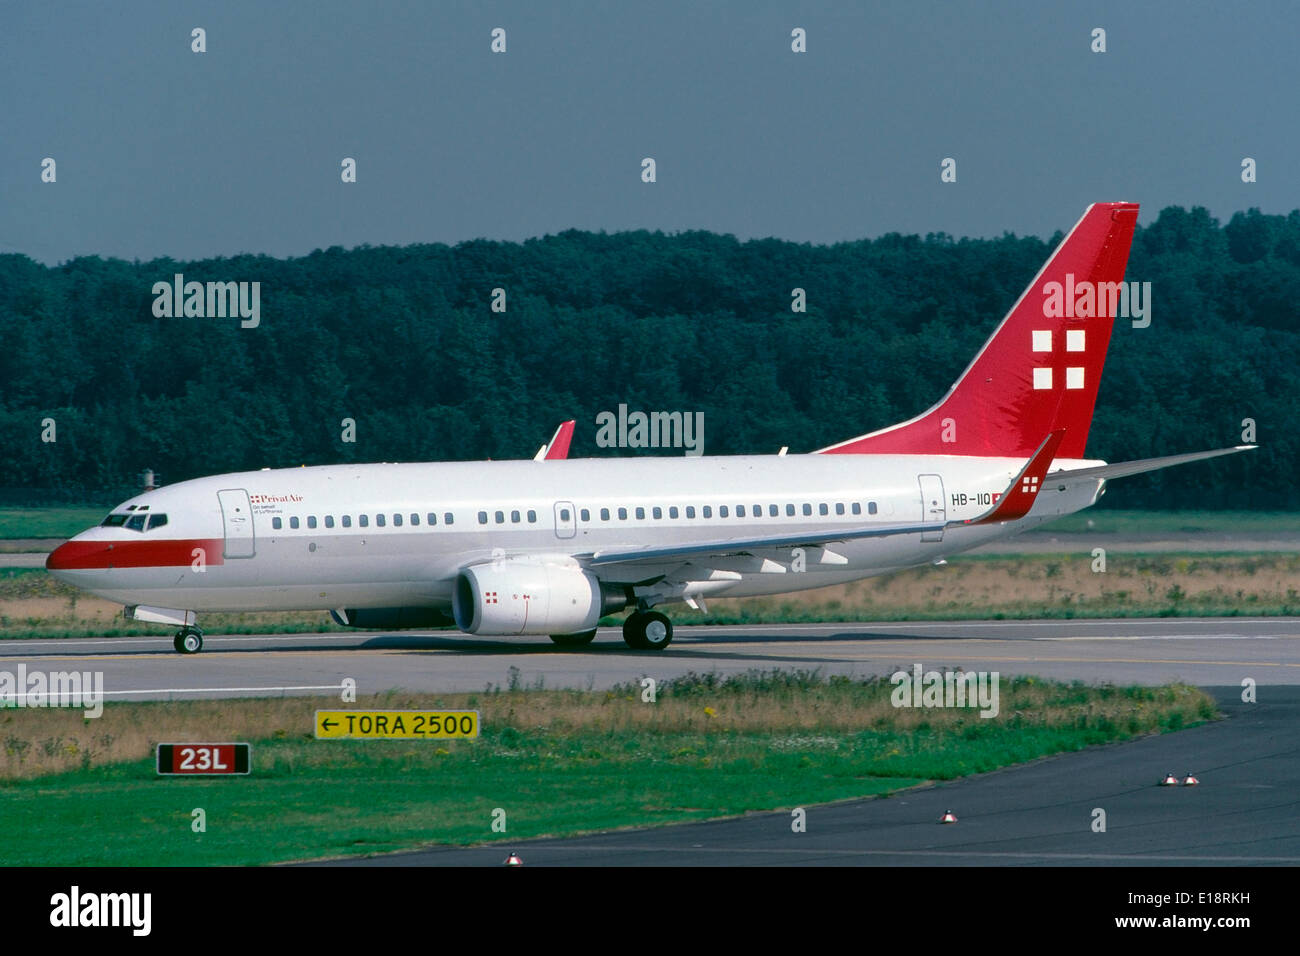 Un Boeing 737-700 passeggeri aerei della compagnia aerea svizzera PrivatAir è pronta per la partenza in aeroporto Dusseldorf-Lohausen, operando per conto del vettore tedesco Lufthansa. Foto Stock